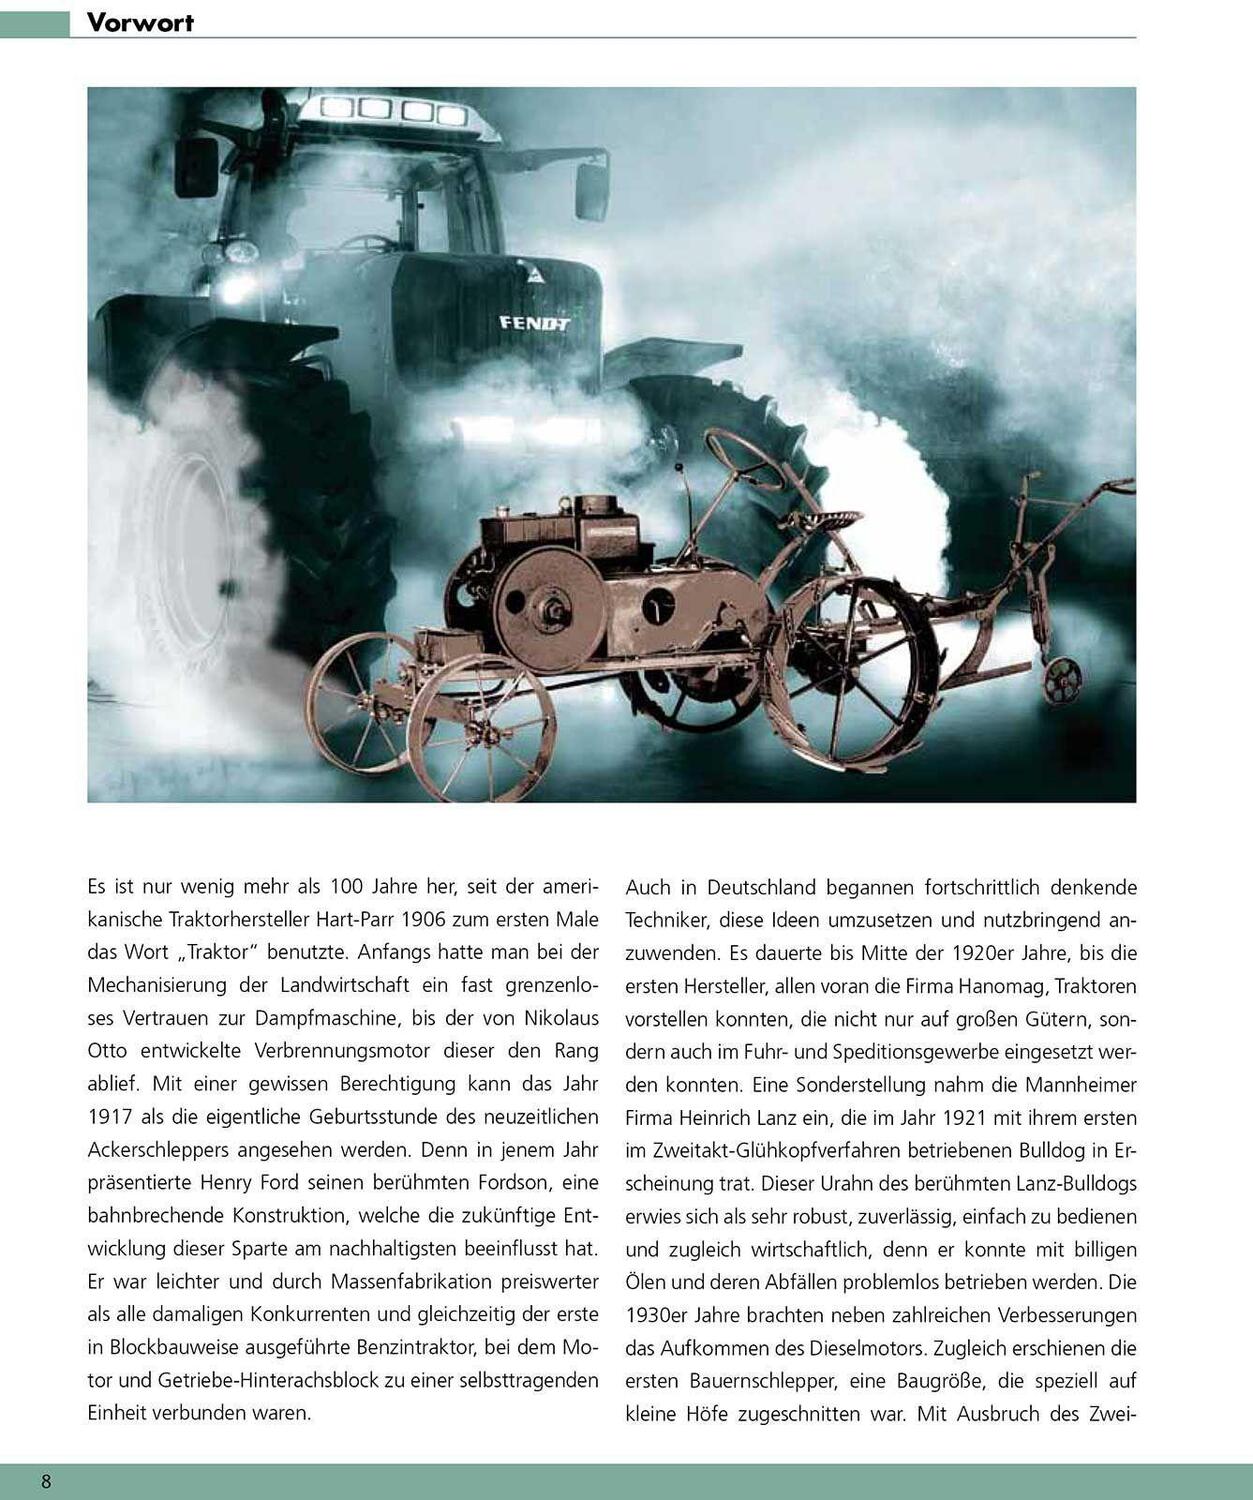 Bild: 9783868522808 | Traktoren | Die schönsten Modelle seit den 1920er Jahren | Udo Paulitz